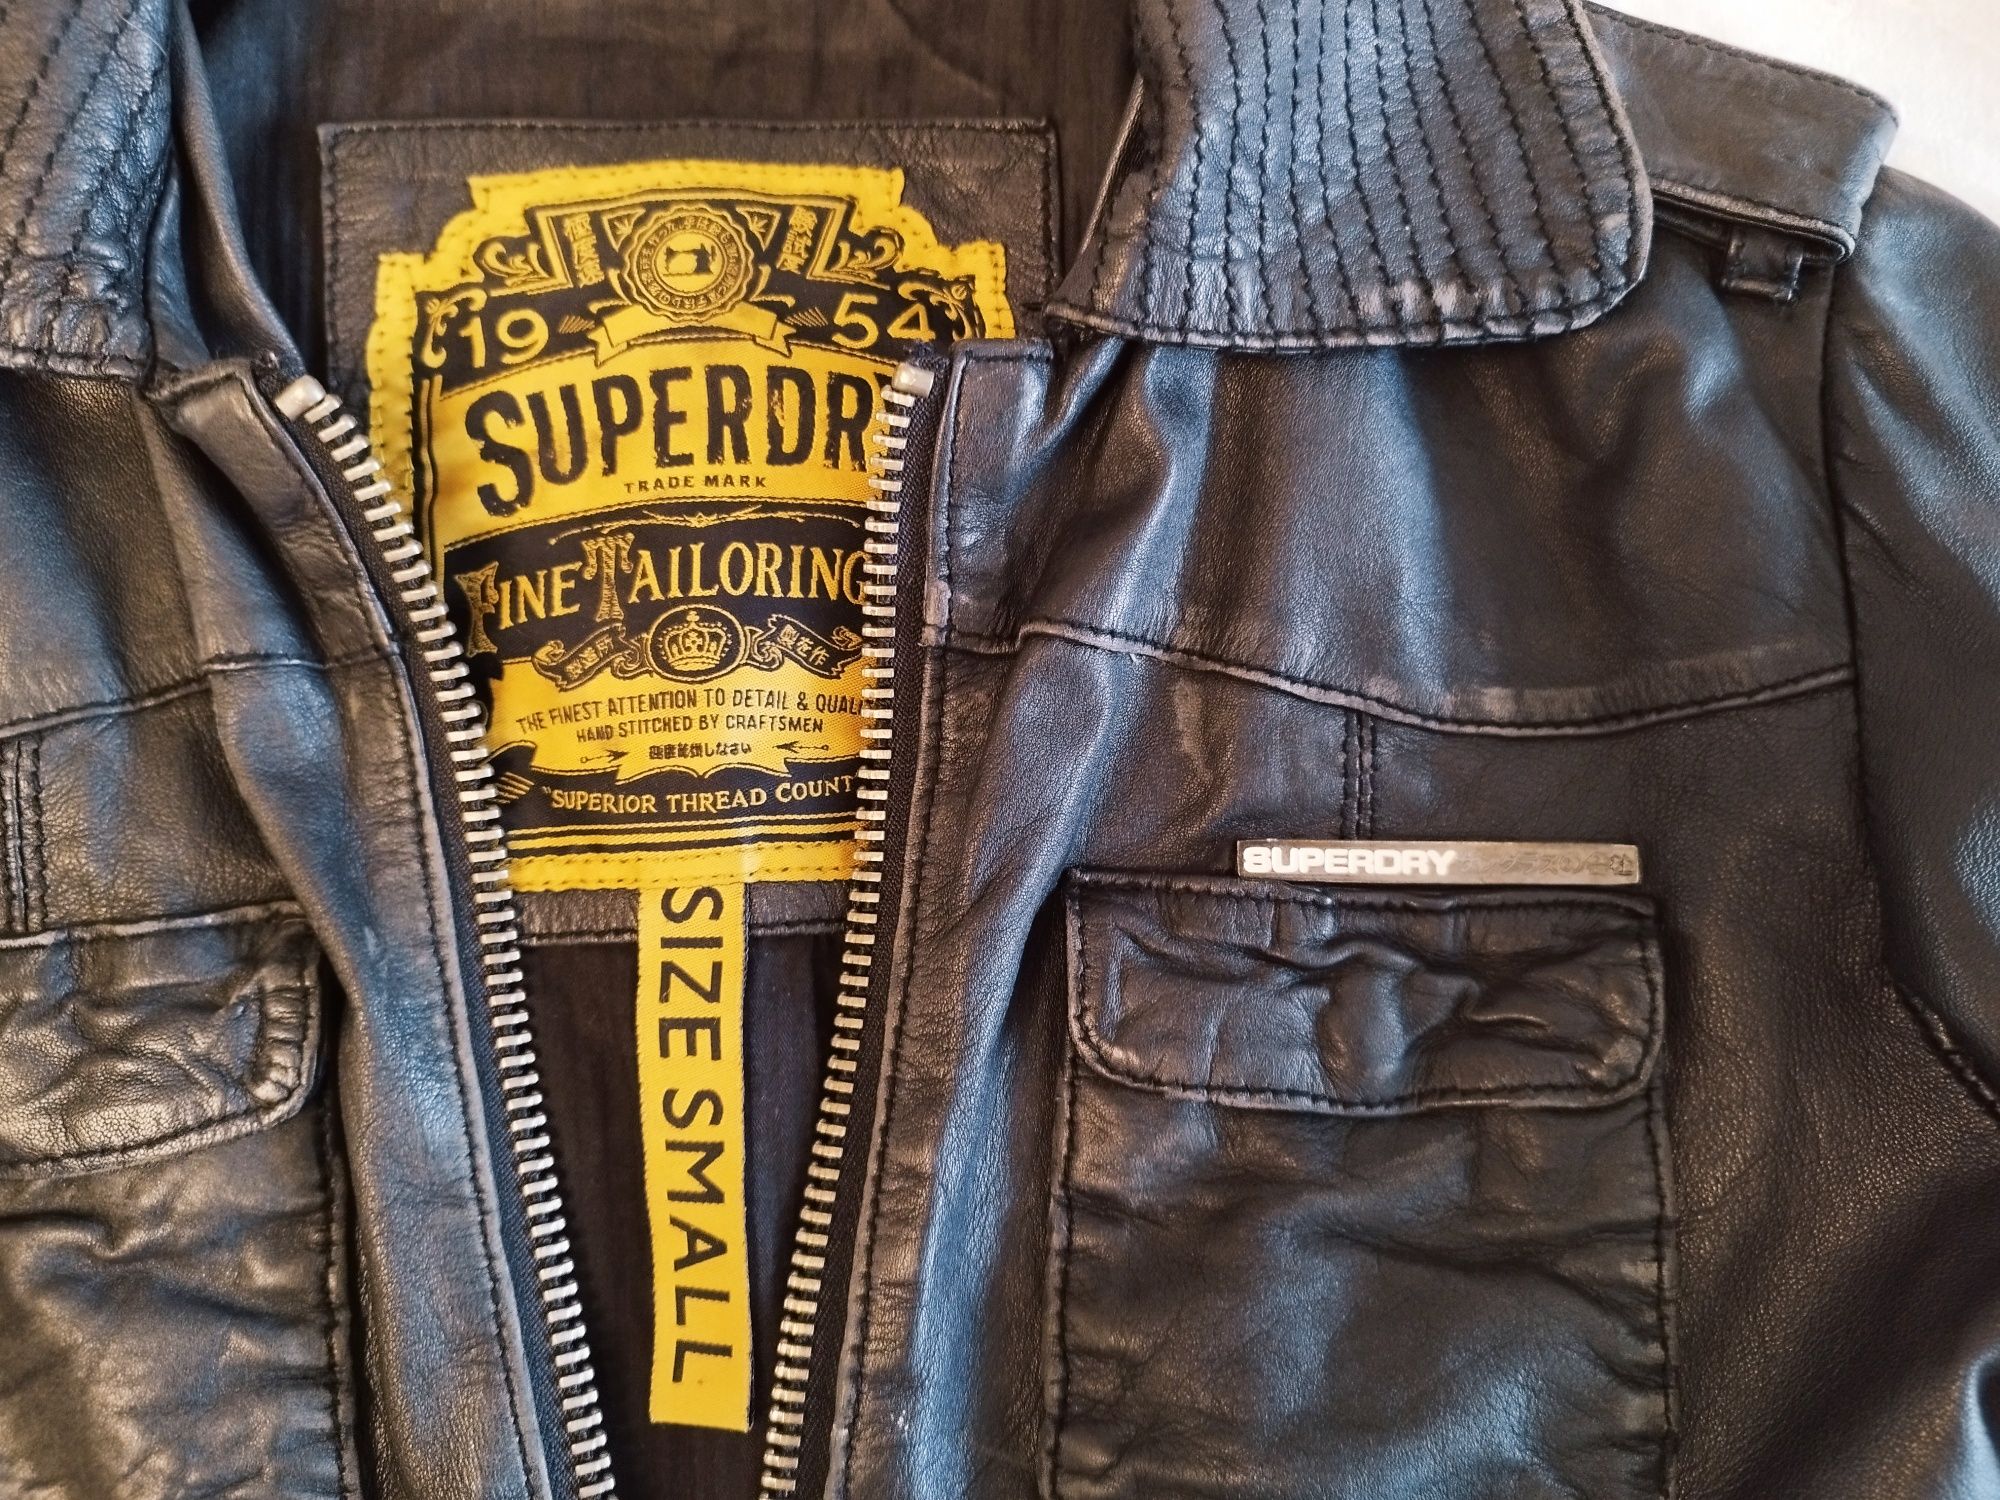 Jachetă de damă Superdry 1954, biker din piele, mărimea S.

Descriere: